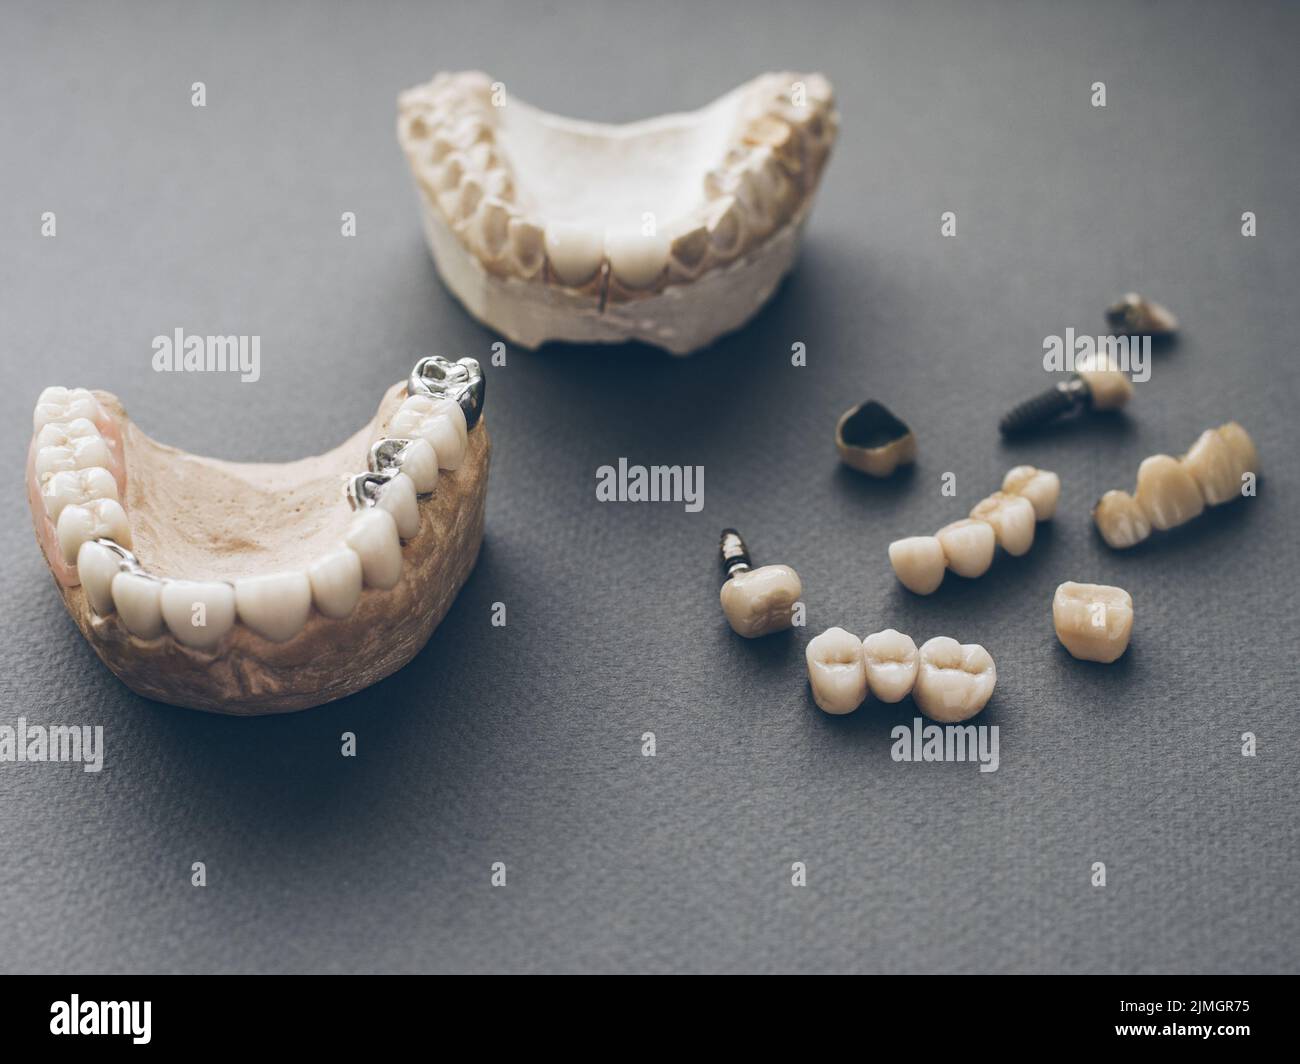 orthodontics prosthetics jaws dentures crowns Stock Photo